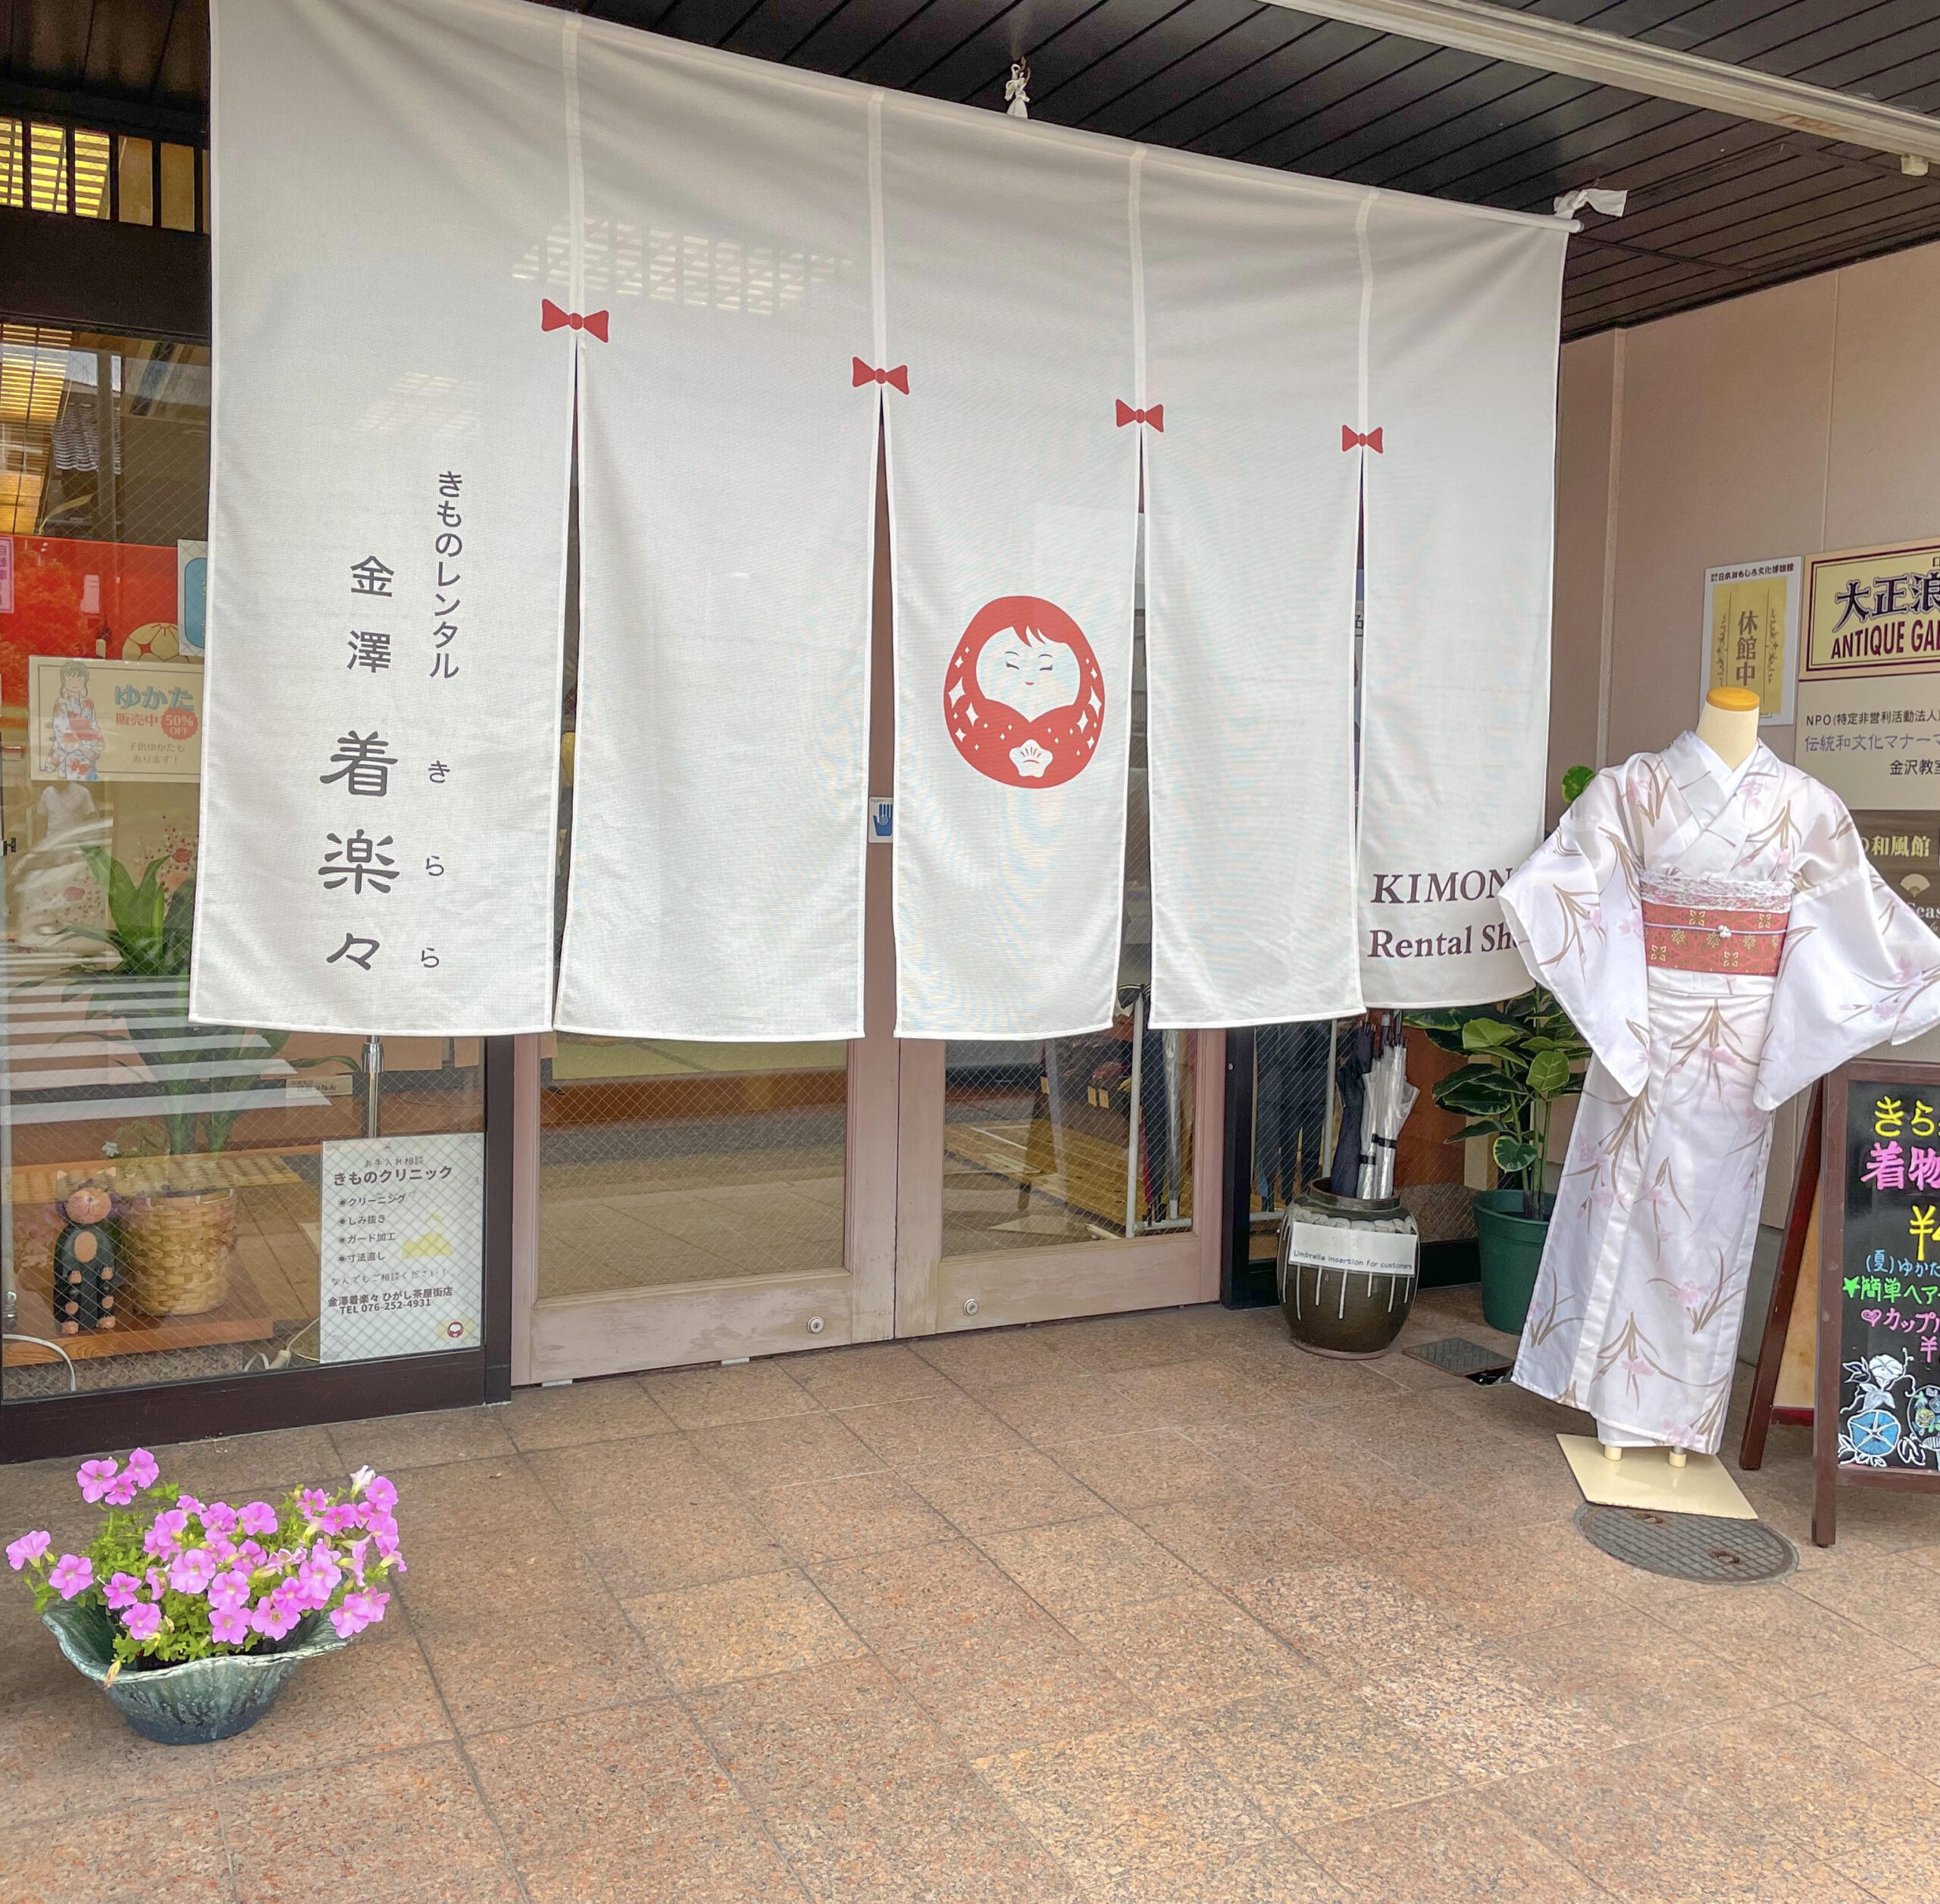 『金澤着楽々』が金沢でおすすめの着物レンタルまとめ記事に紹介されました！